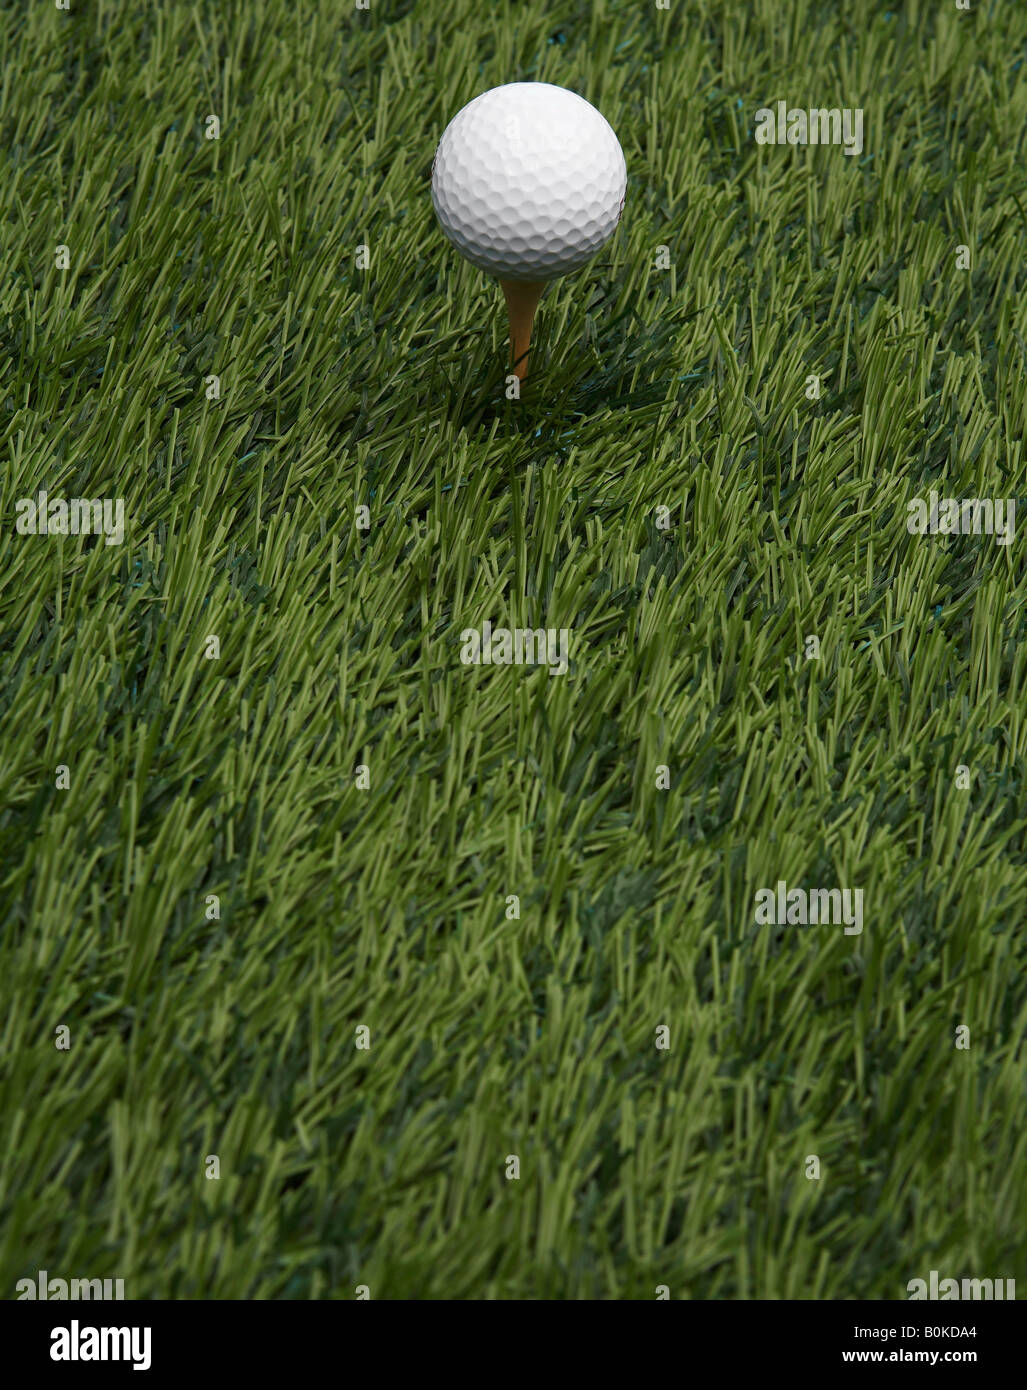 Balle de golf sur l'herbe Banque D'Images